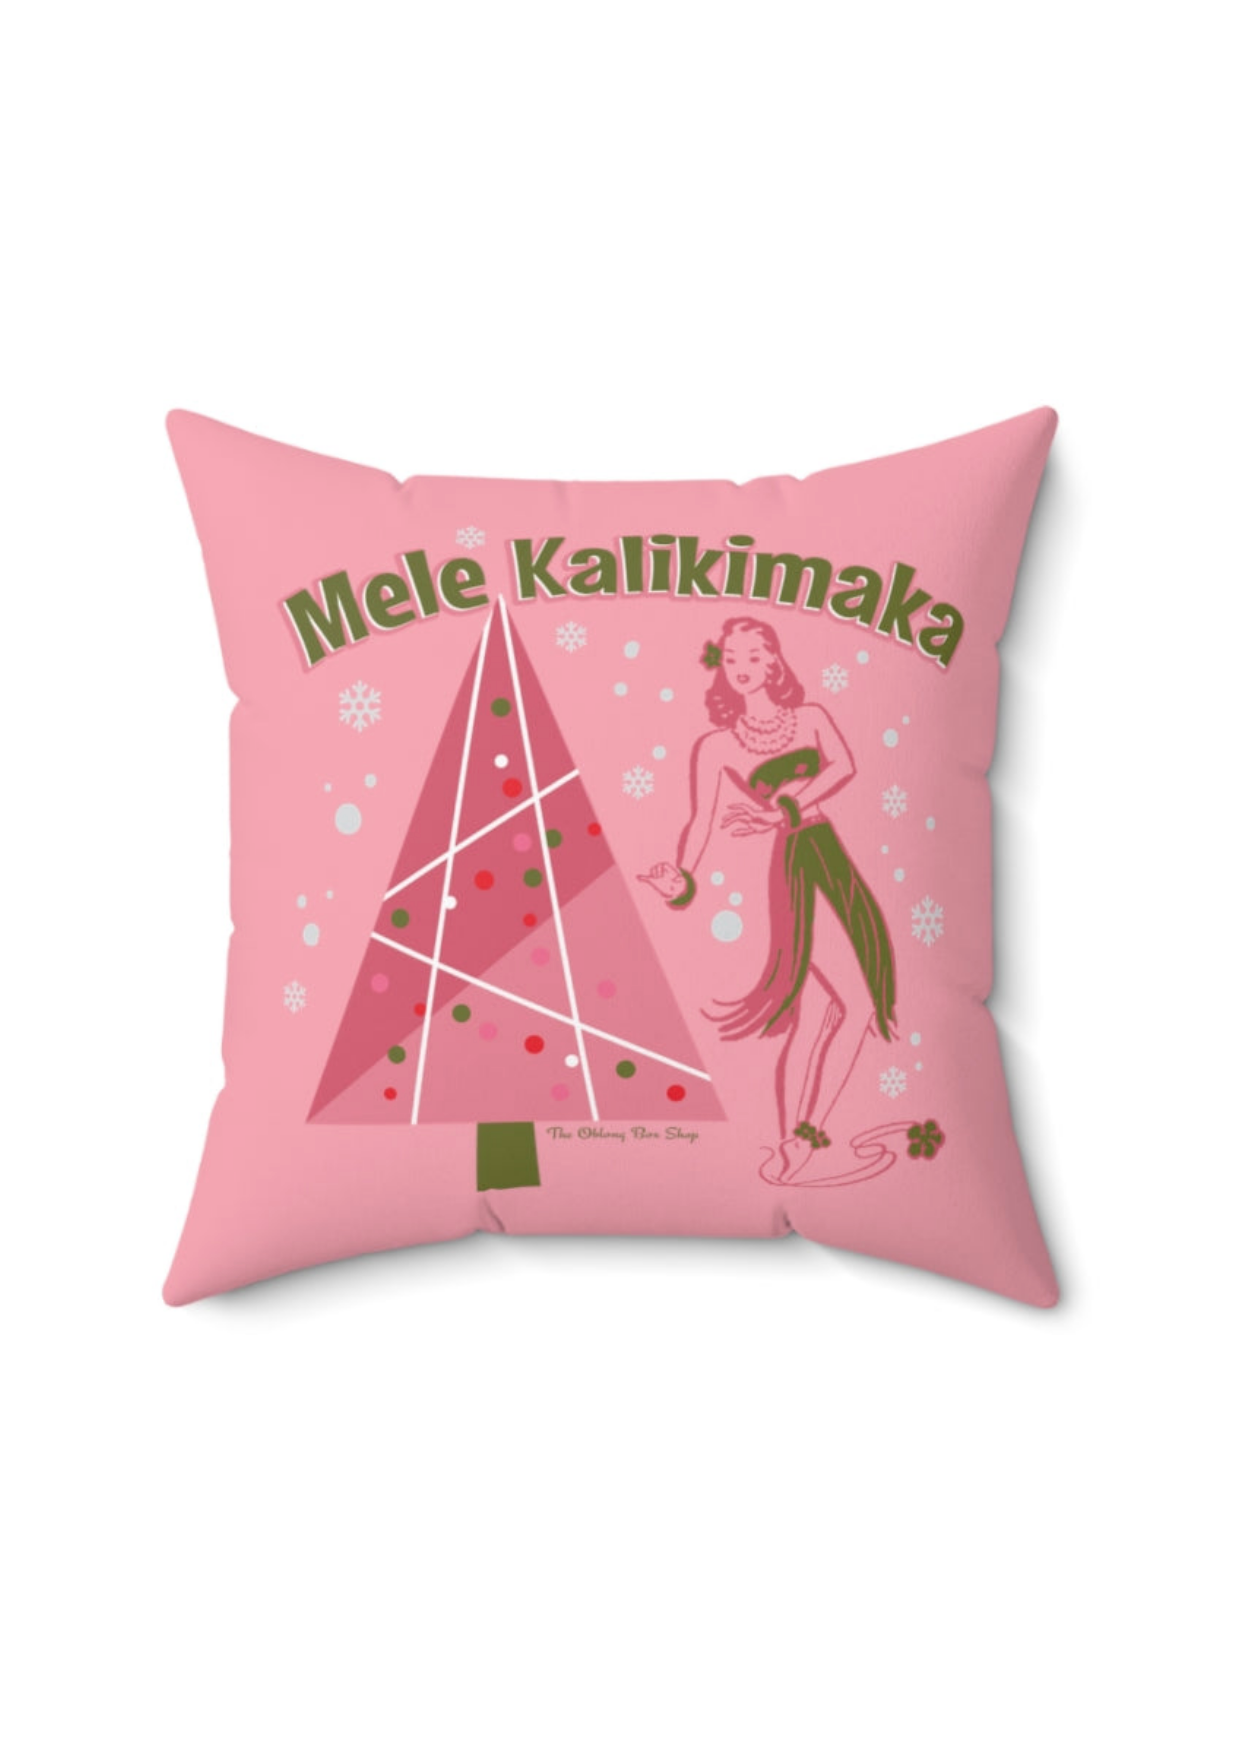 Mele Kalikimaka Throw Pillow Pink